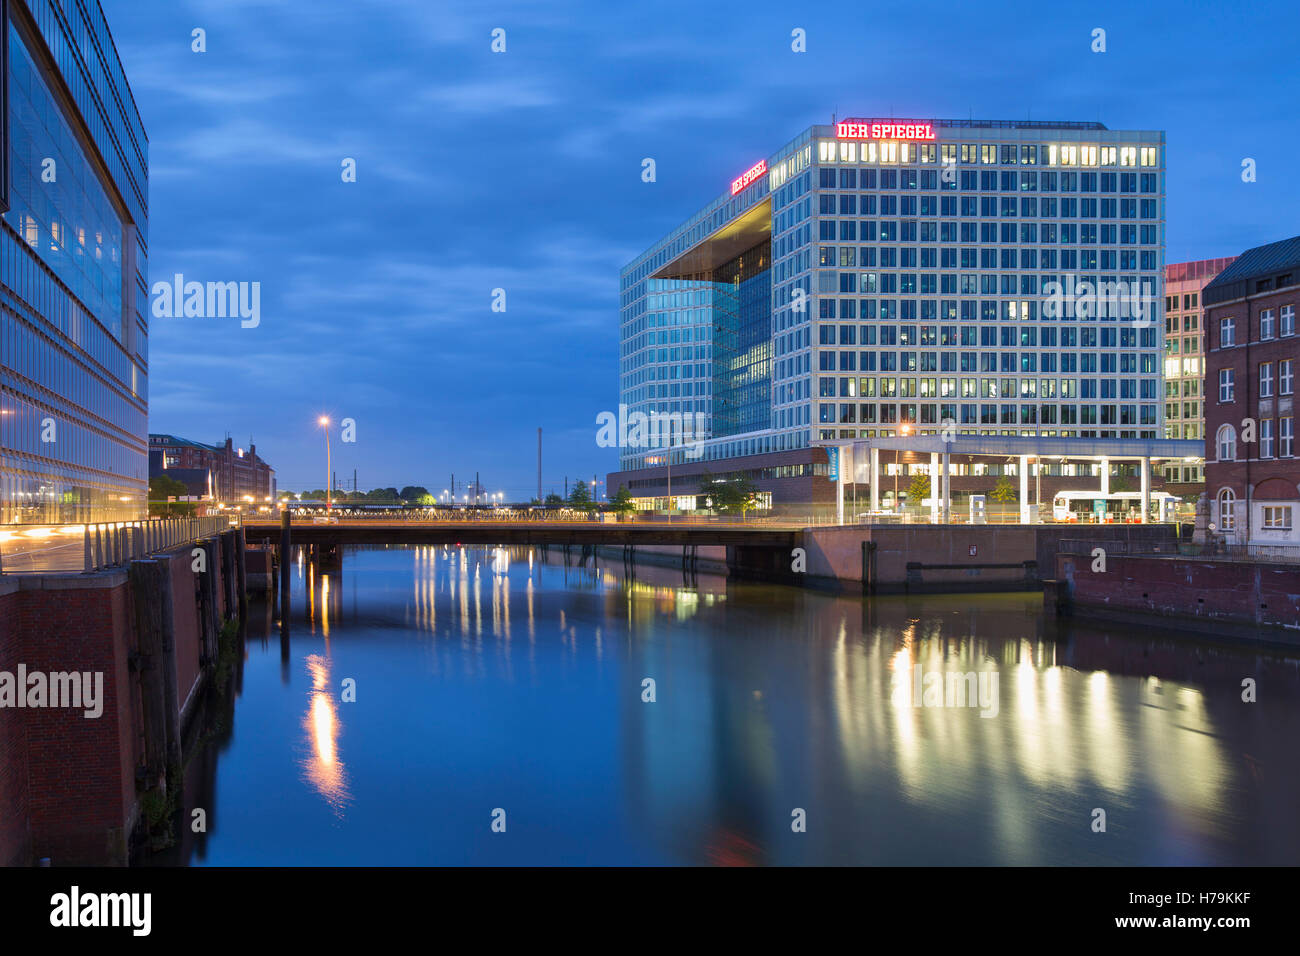 Edificio Der Spiegel, Hamburgo, Alemania. Foto de stock